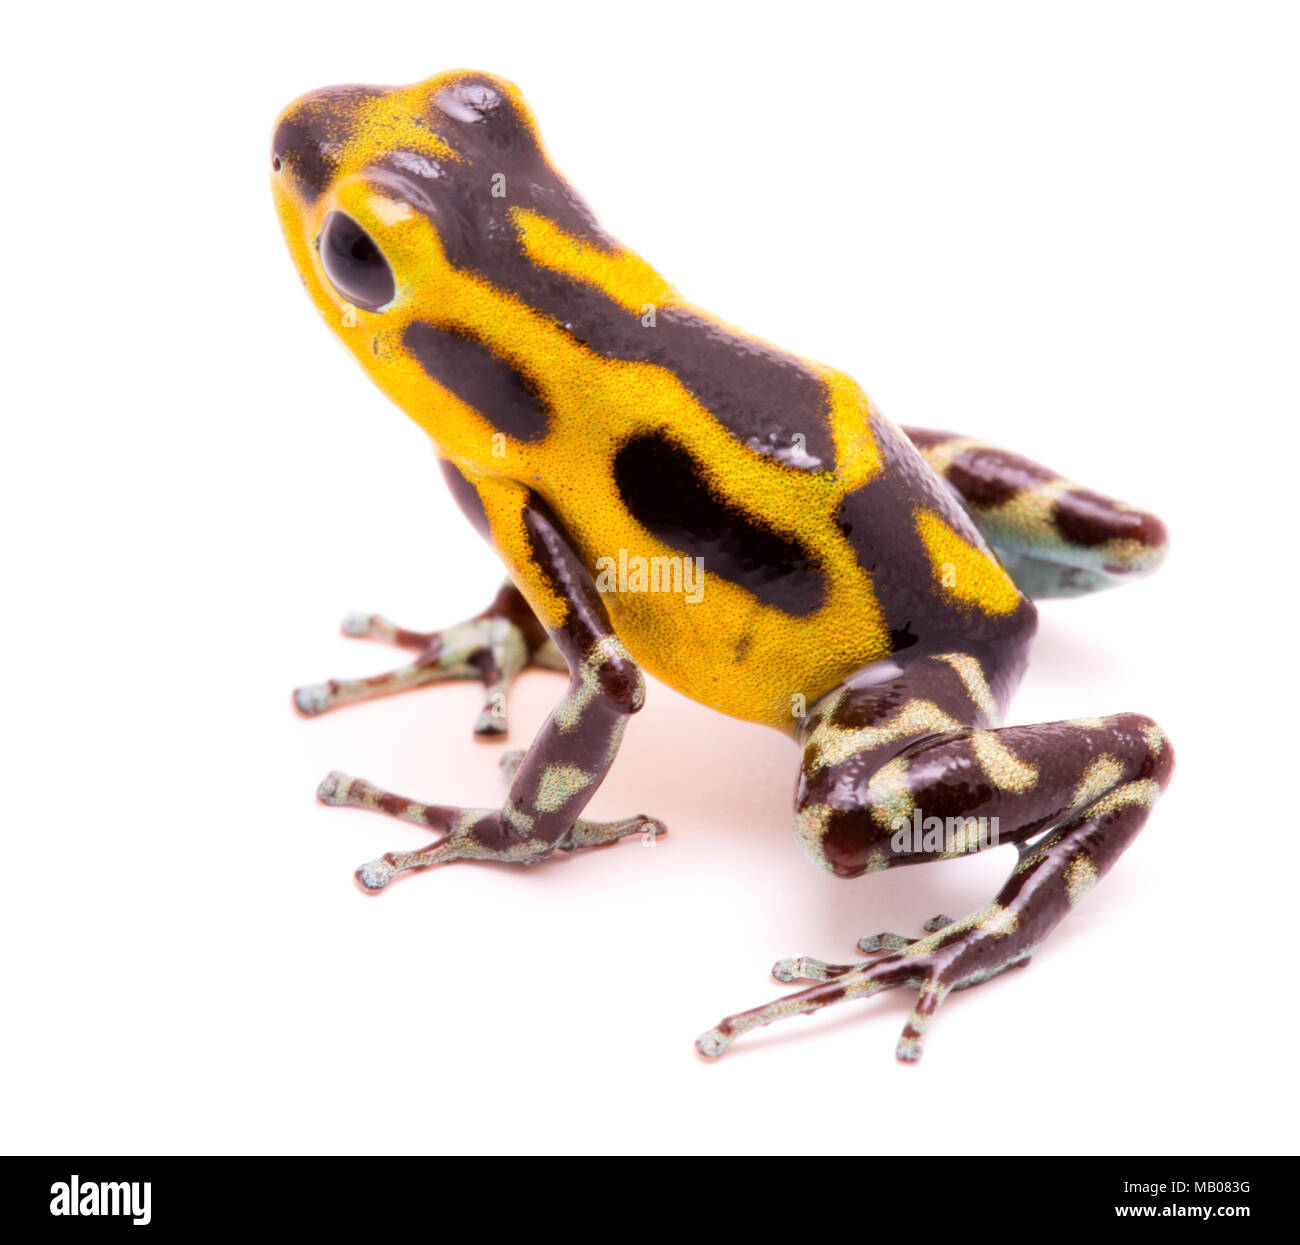 Poison arrow Frog, ein amphibain mit leuchtenden Gelb. Tropische Regenwald Tier giftig, Oophaga pumilio auf einem weißen Hintergrund. Stockfoto